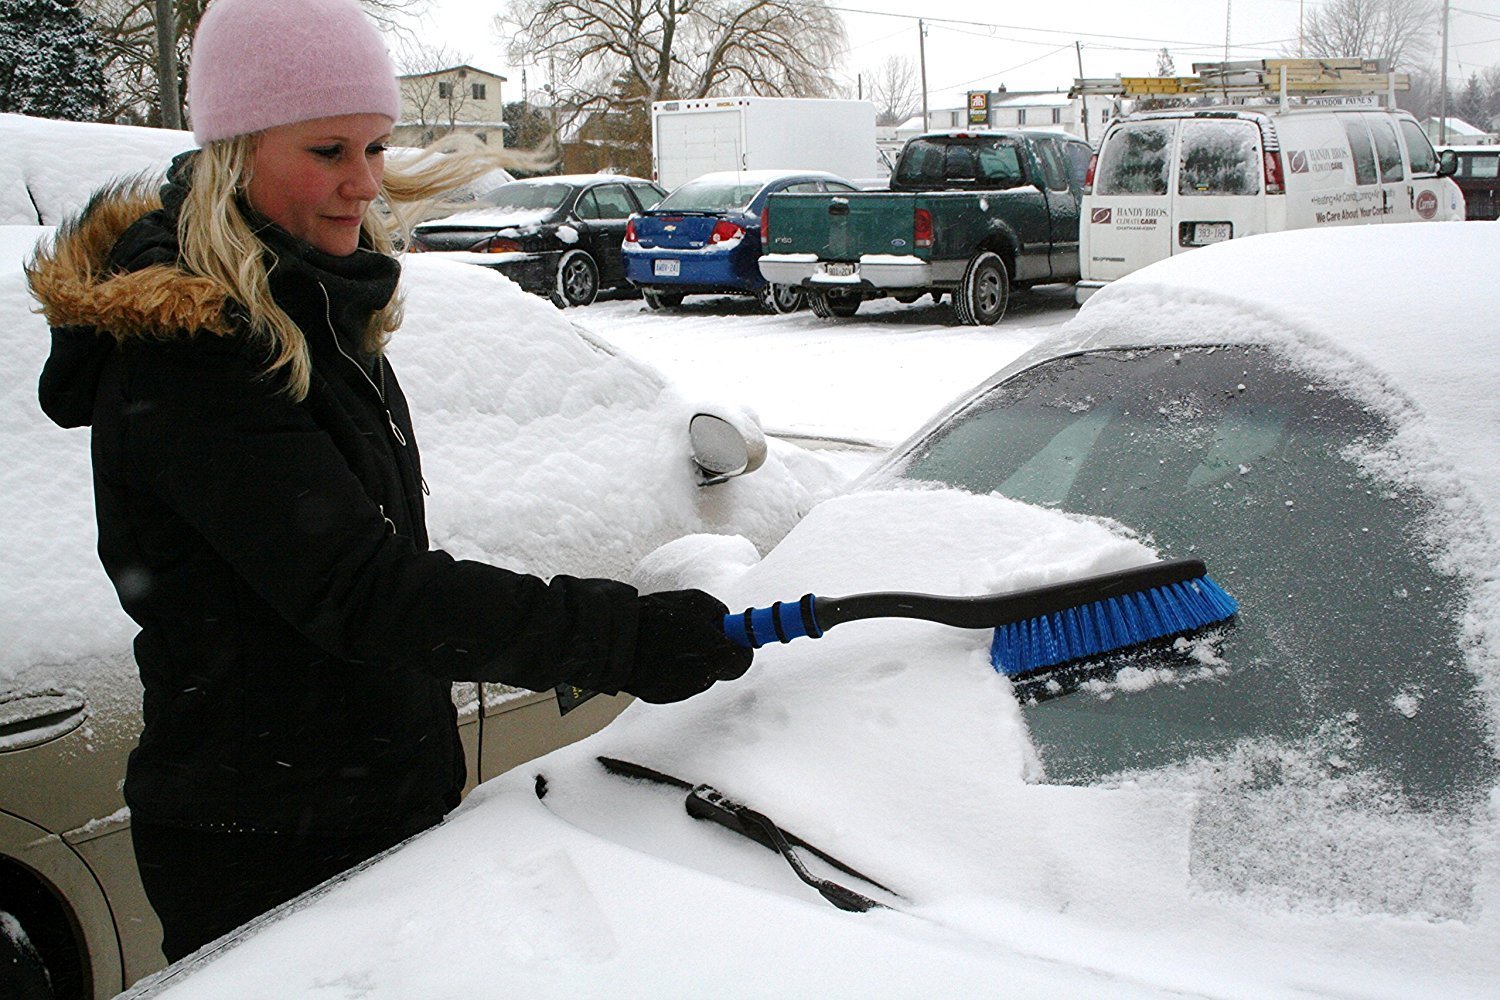 Очиститься снега. Очиститель снега для автомобиля. Щётка для чистки снега автомобильная. Машина в снегу. Машинка для очистки снега с автомобиля.